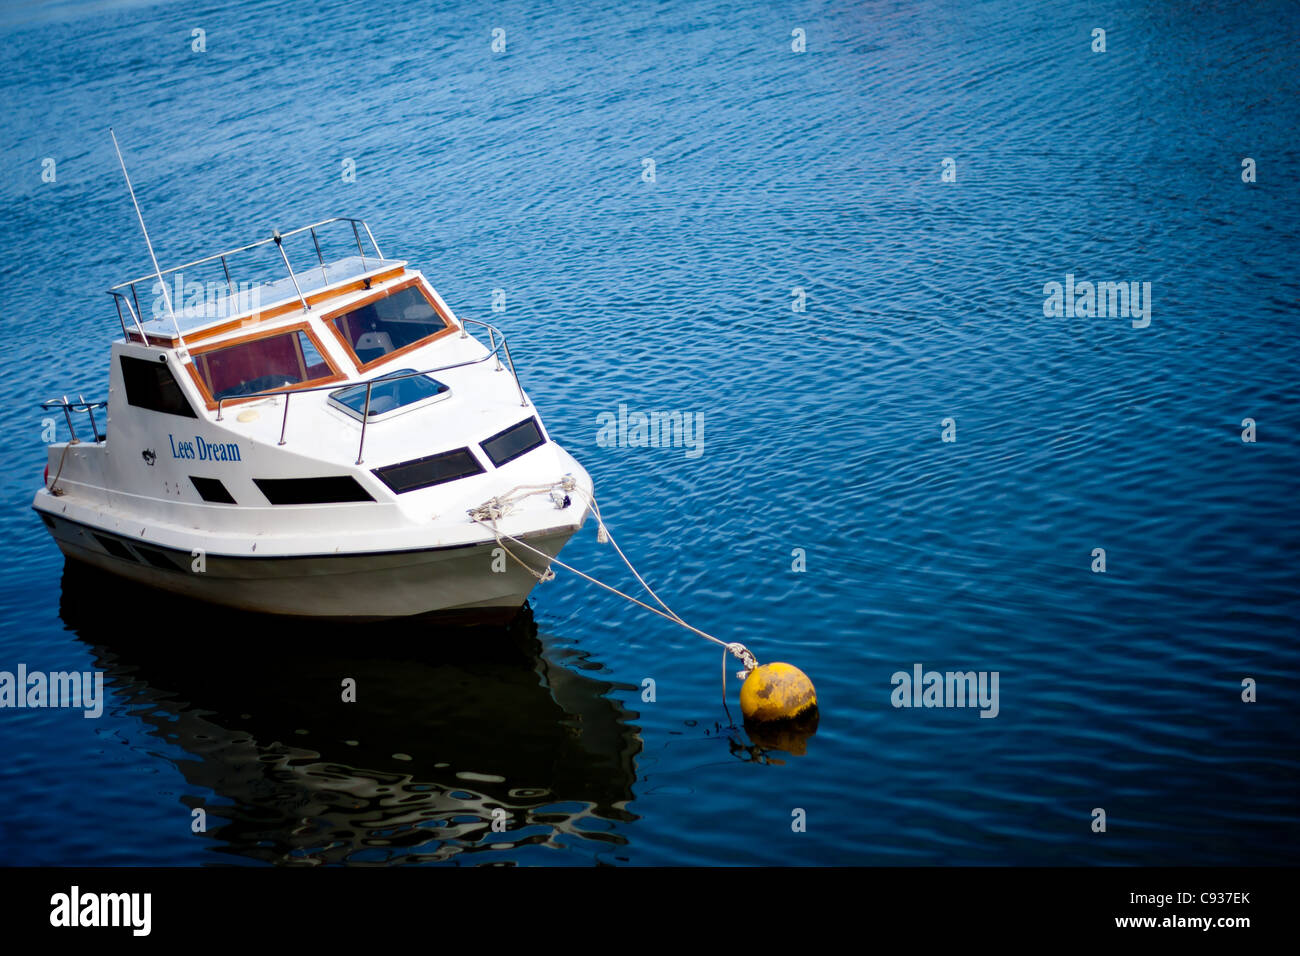 La mer, avec un bateau sur une bouée montrant la belle vue panoramique sur la mer. Banque D'Images